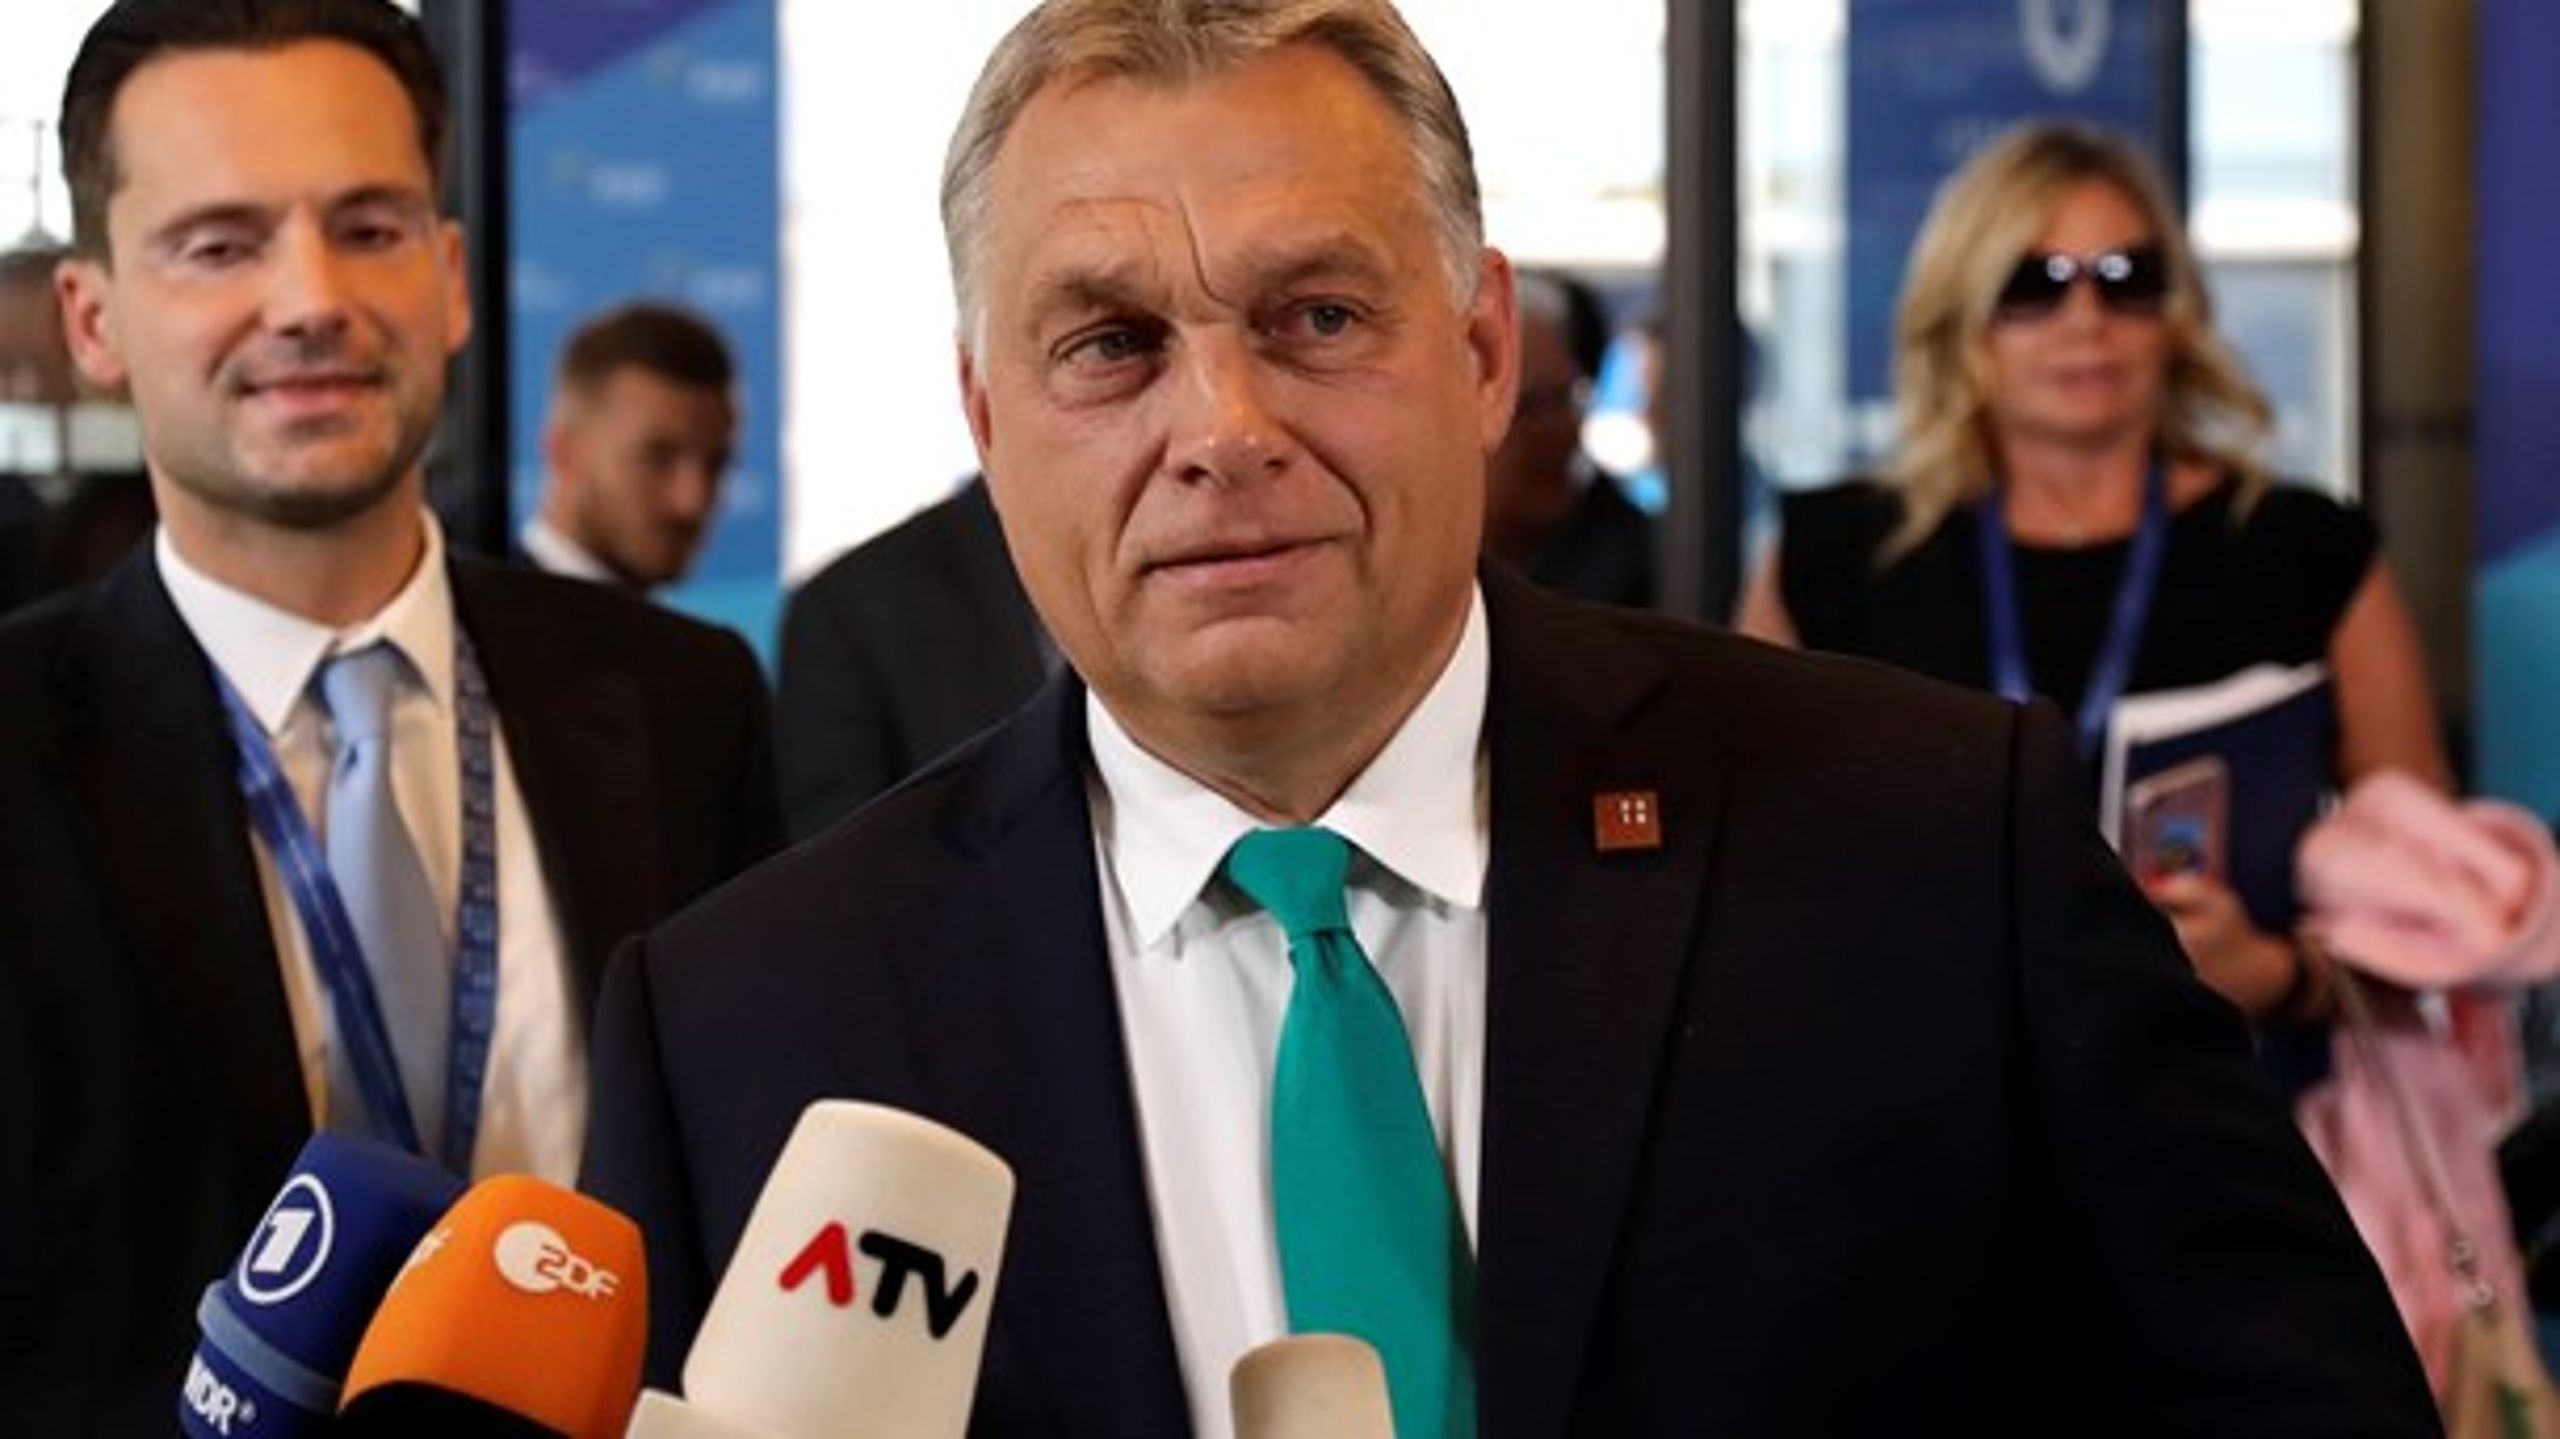 Det ungarske mediebillede domineres af statsligt ejede medier under premierminister Orbáns kontrol, skriver medlem af Europa-Parlamentet Morten Løkkegaard (V).